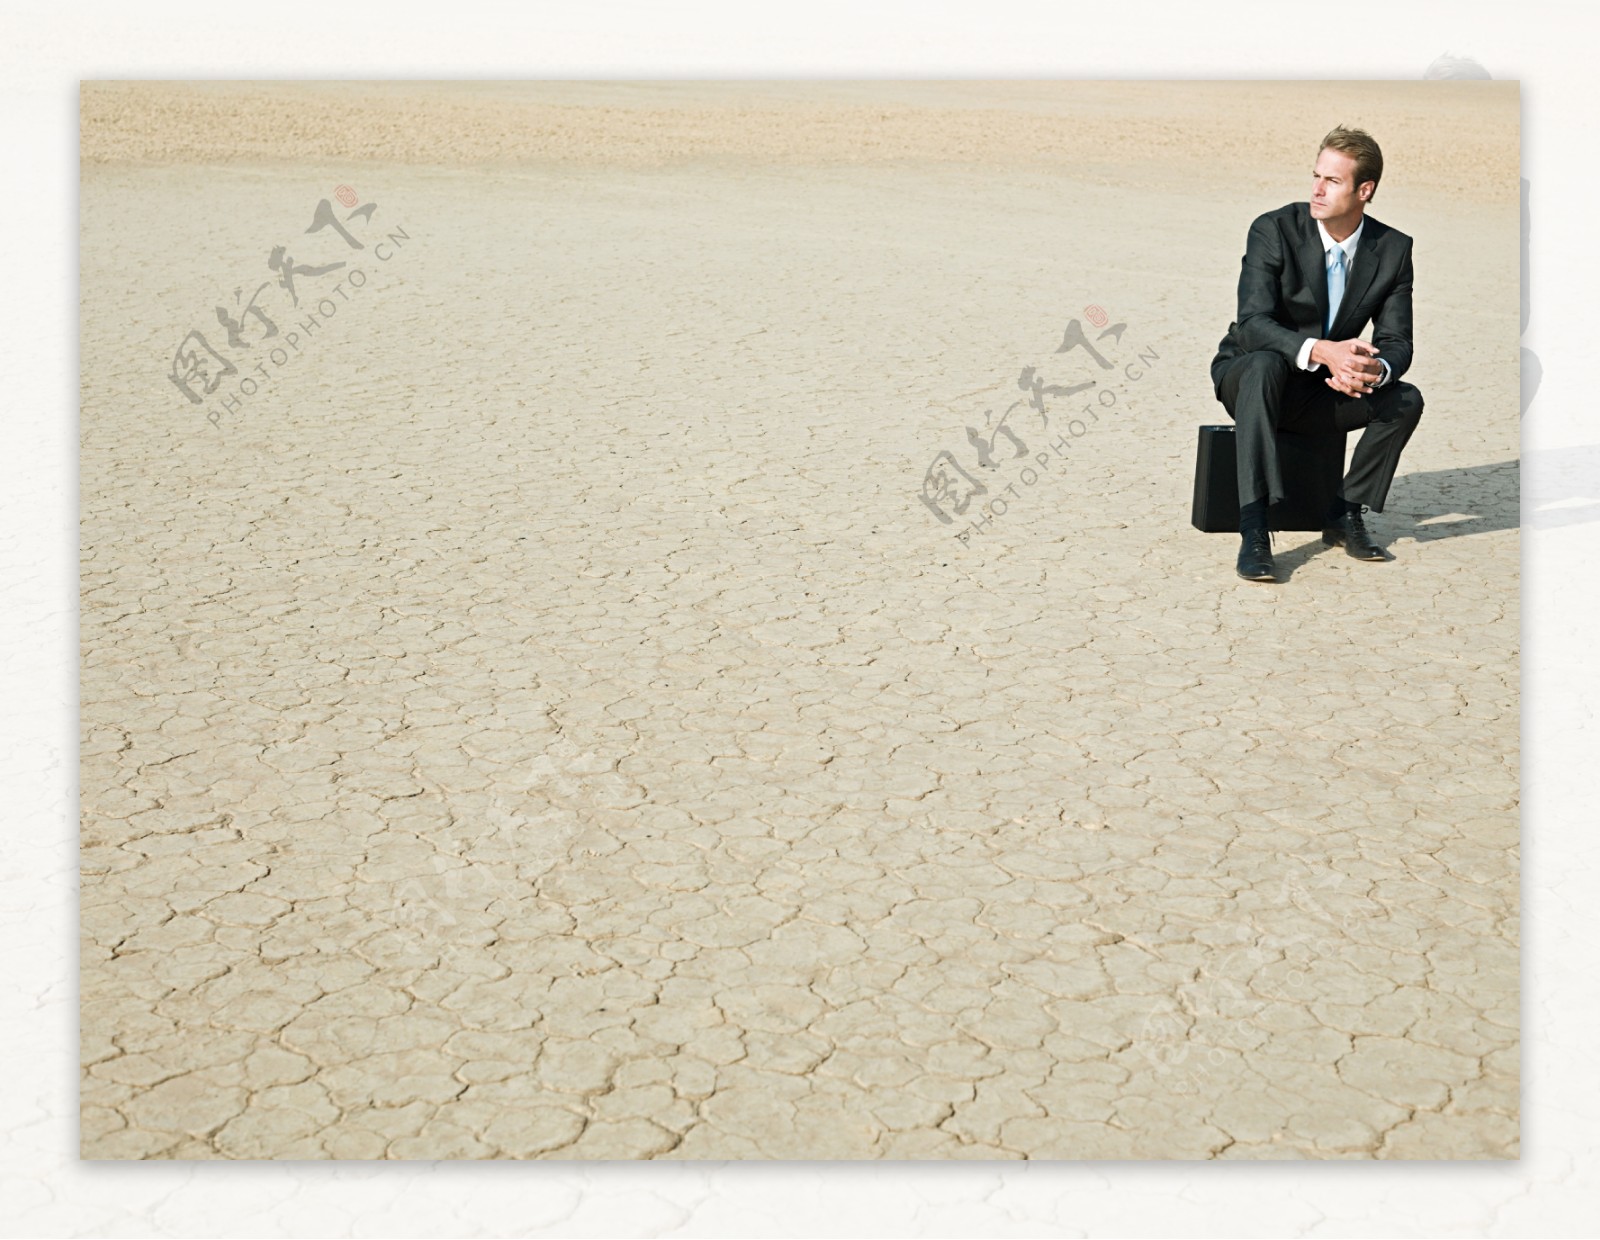 坐在裂缝土地上遥望的外国商业男人图片